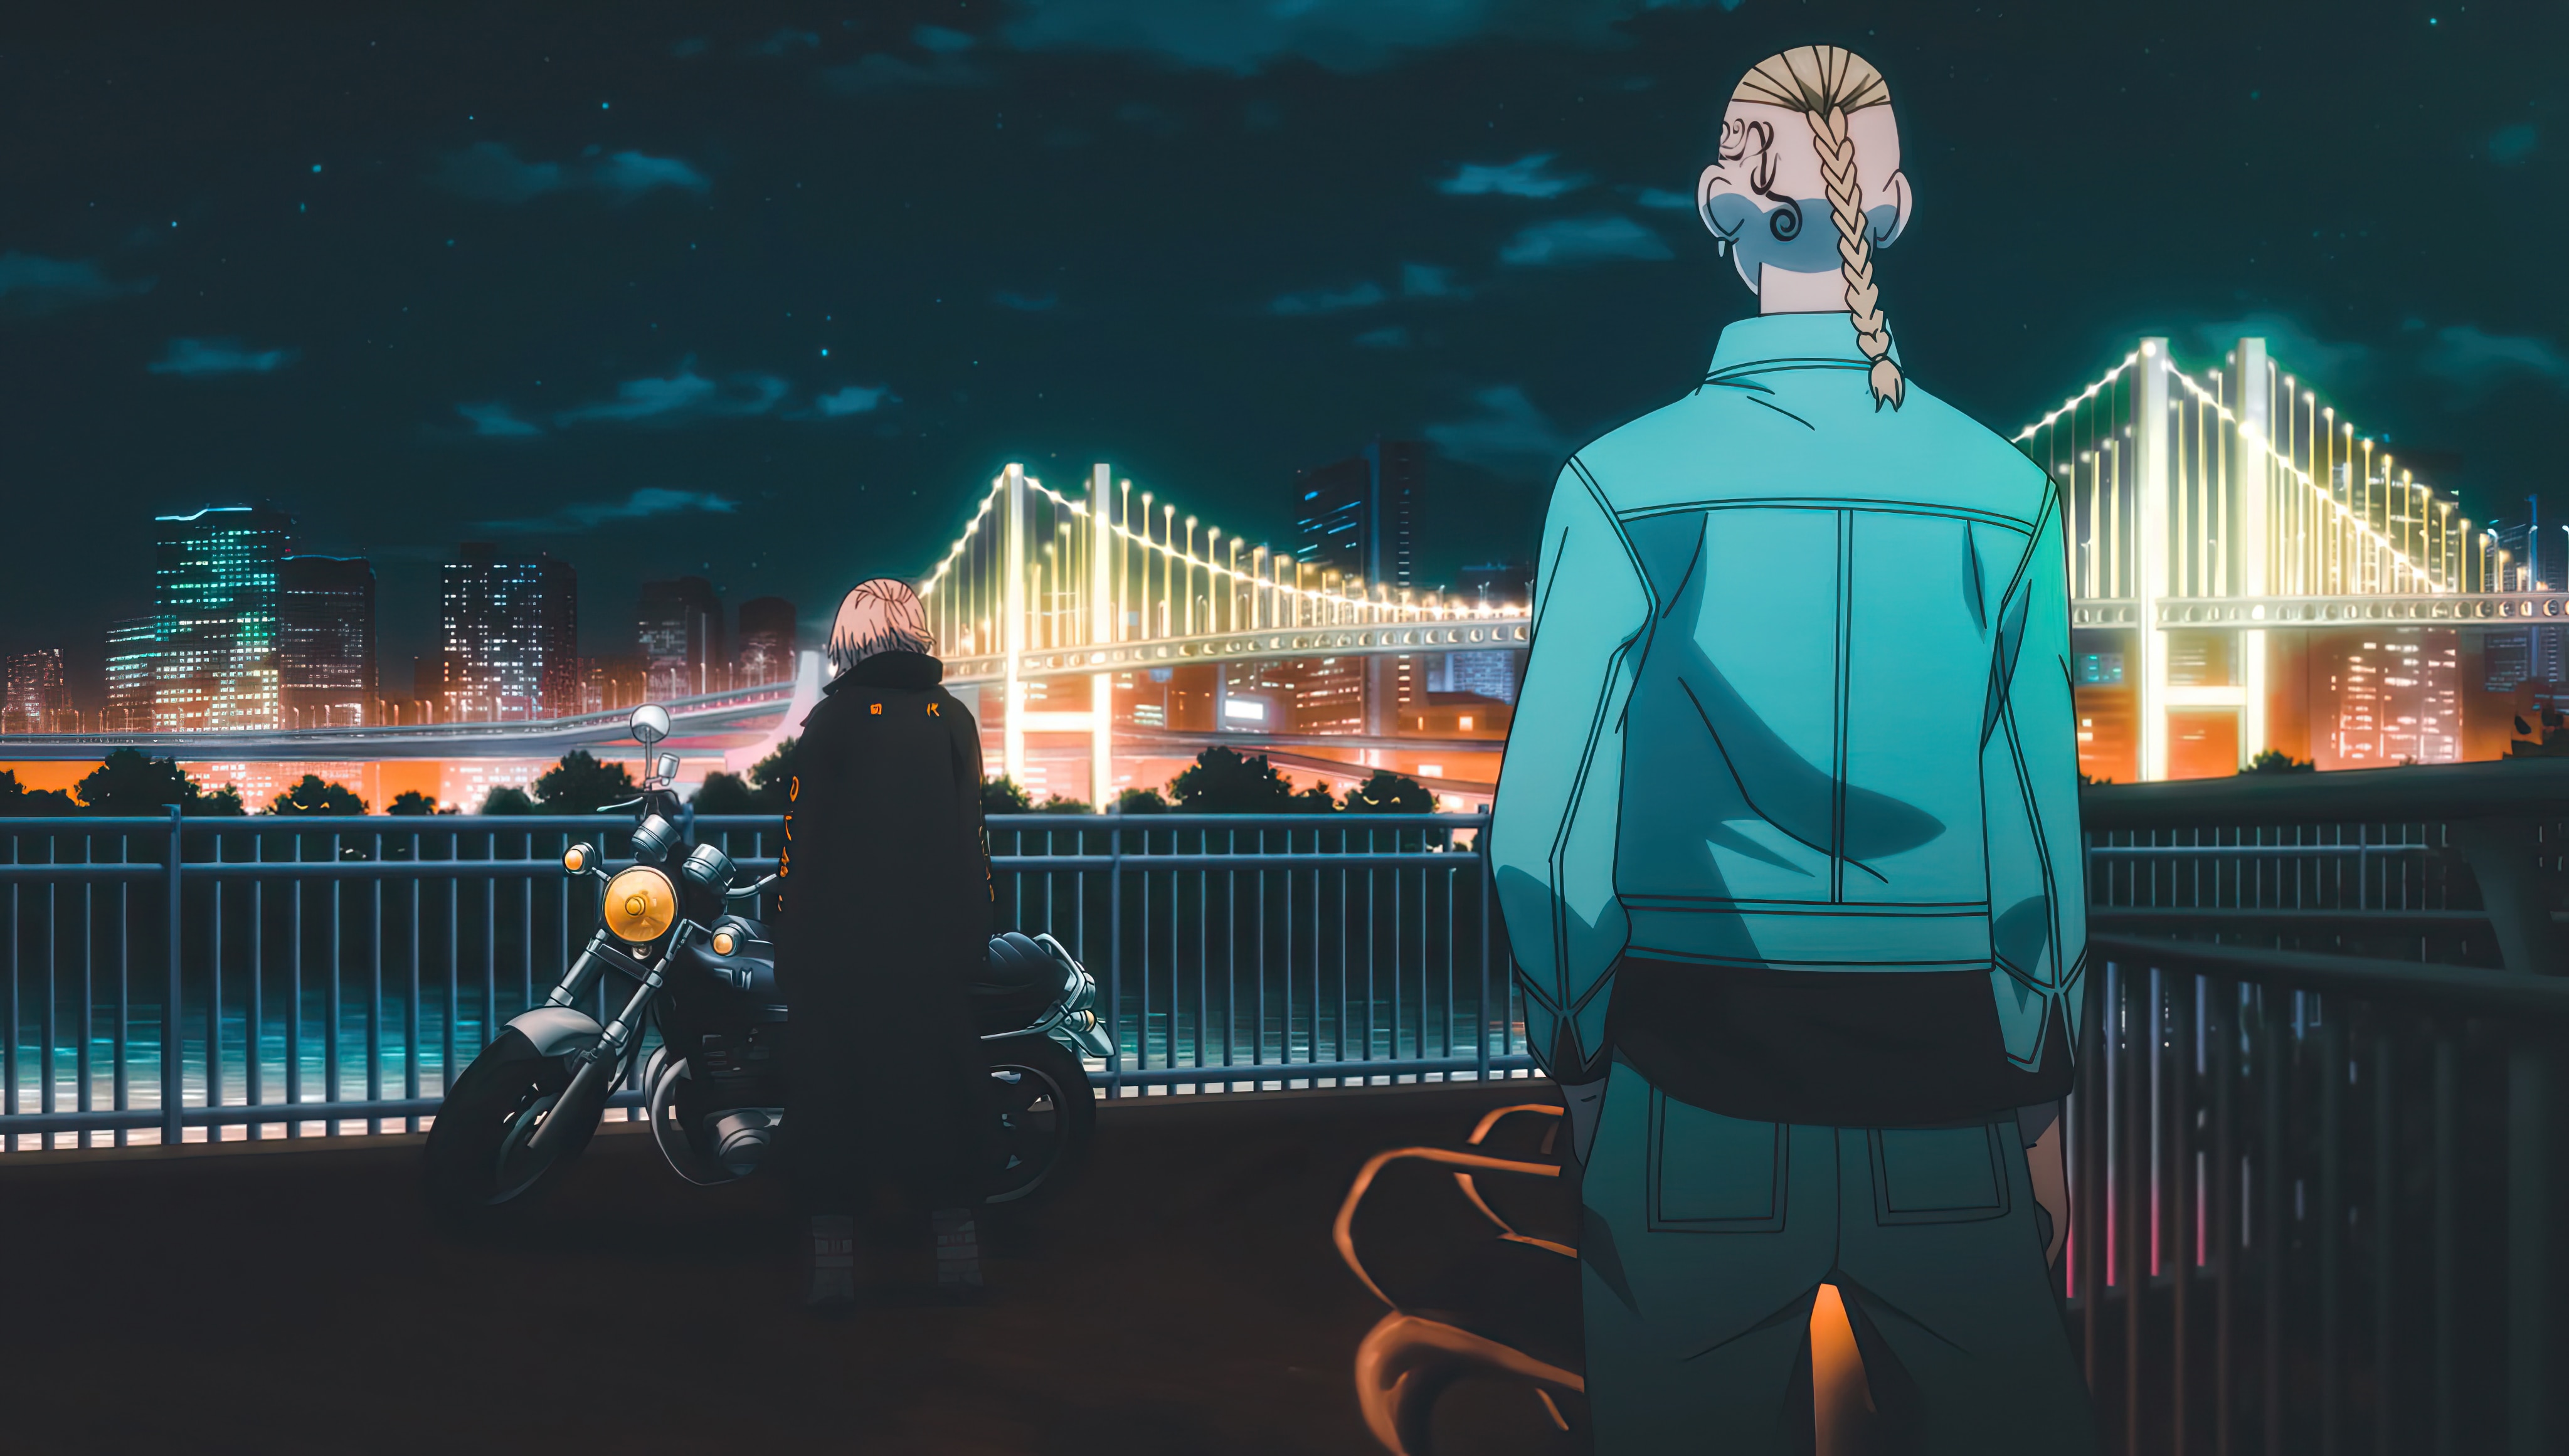 Tải hình nền Tokyo Revengers để cập nhật nhân vật và cảnh quan ấn tượng nhất trong bộ anime đang hot.